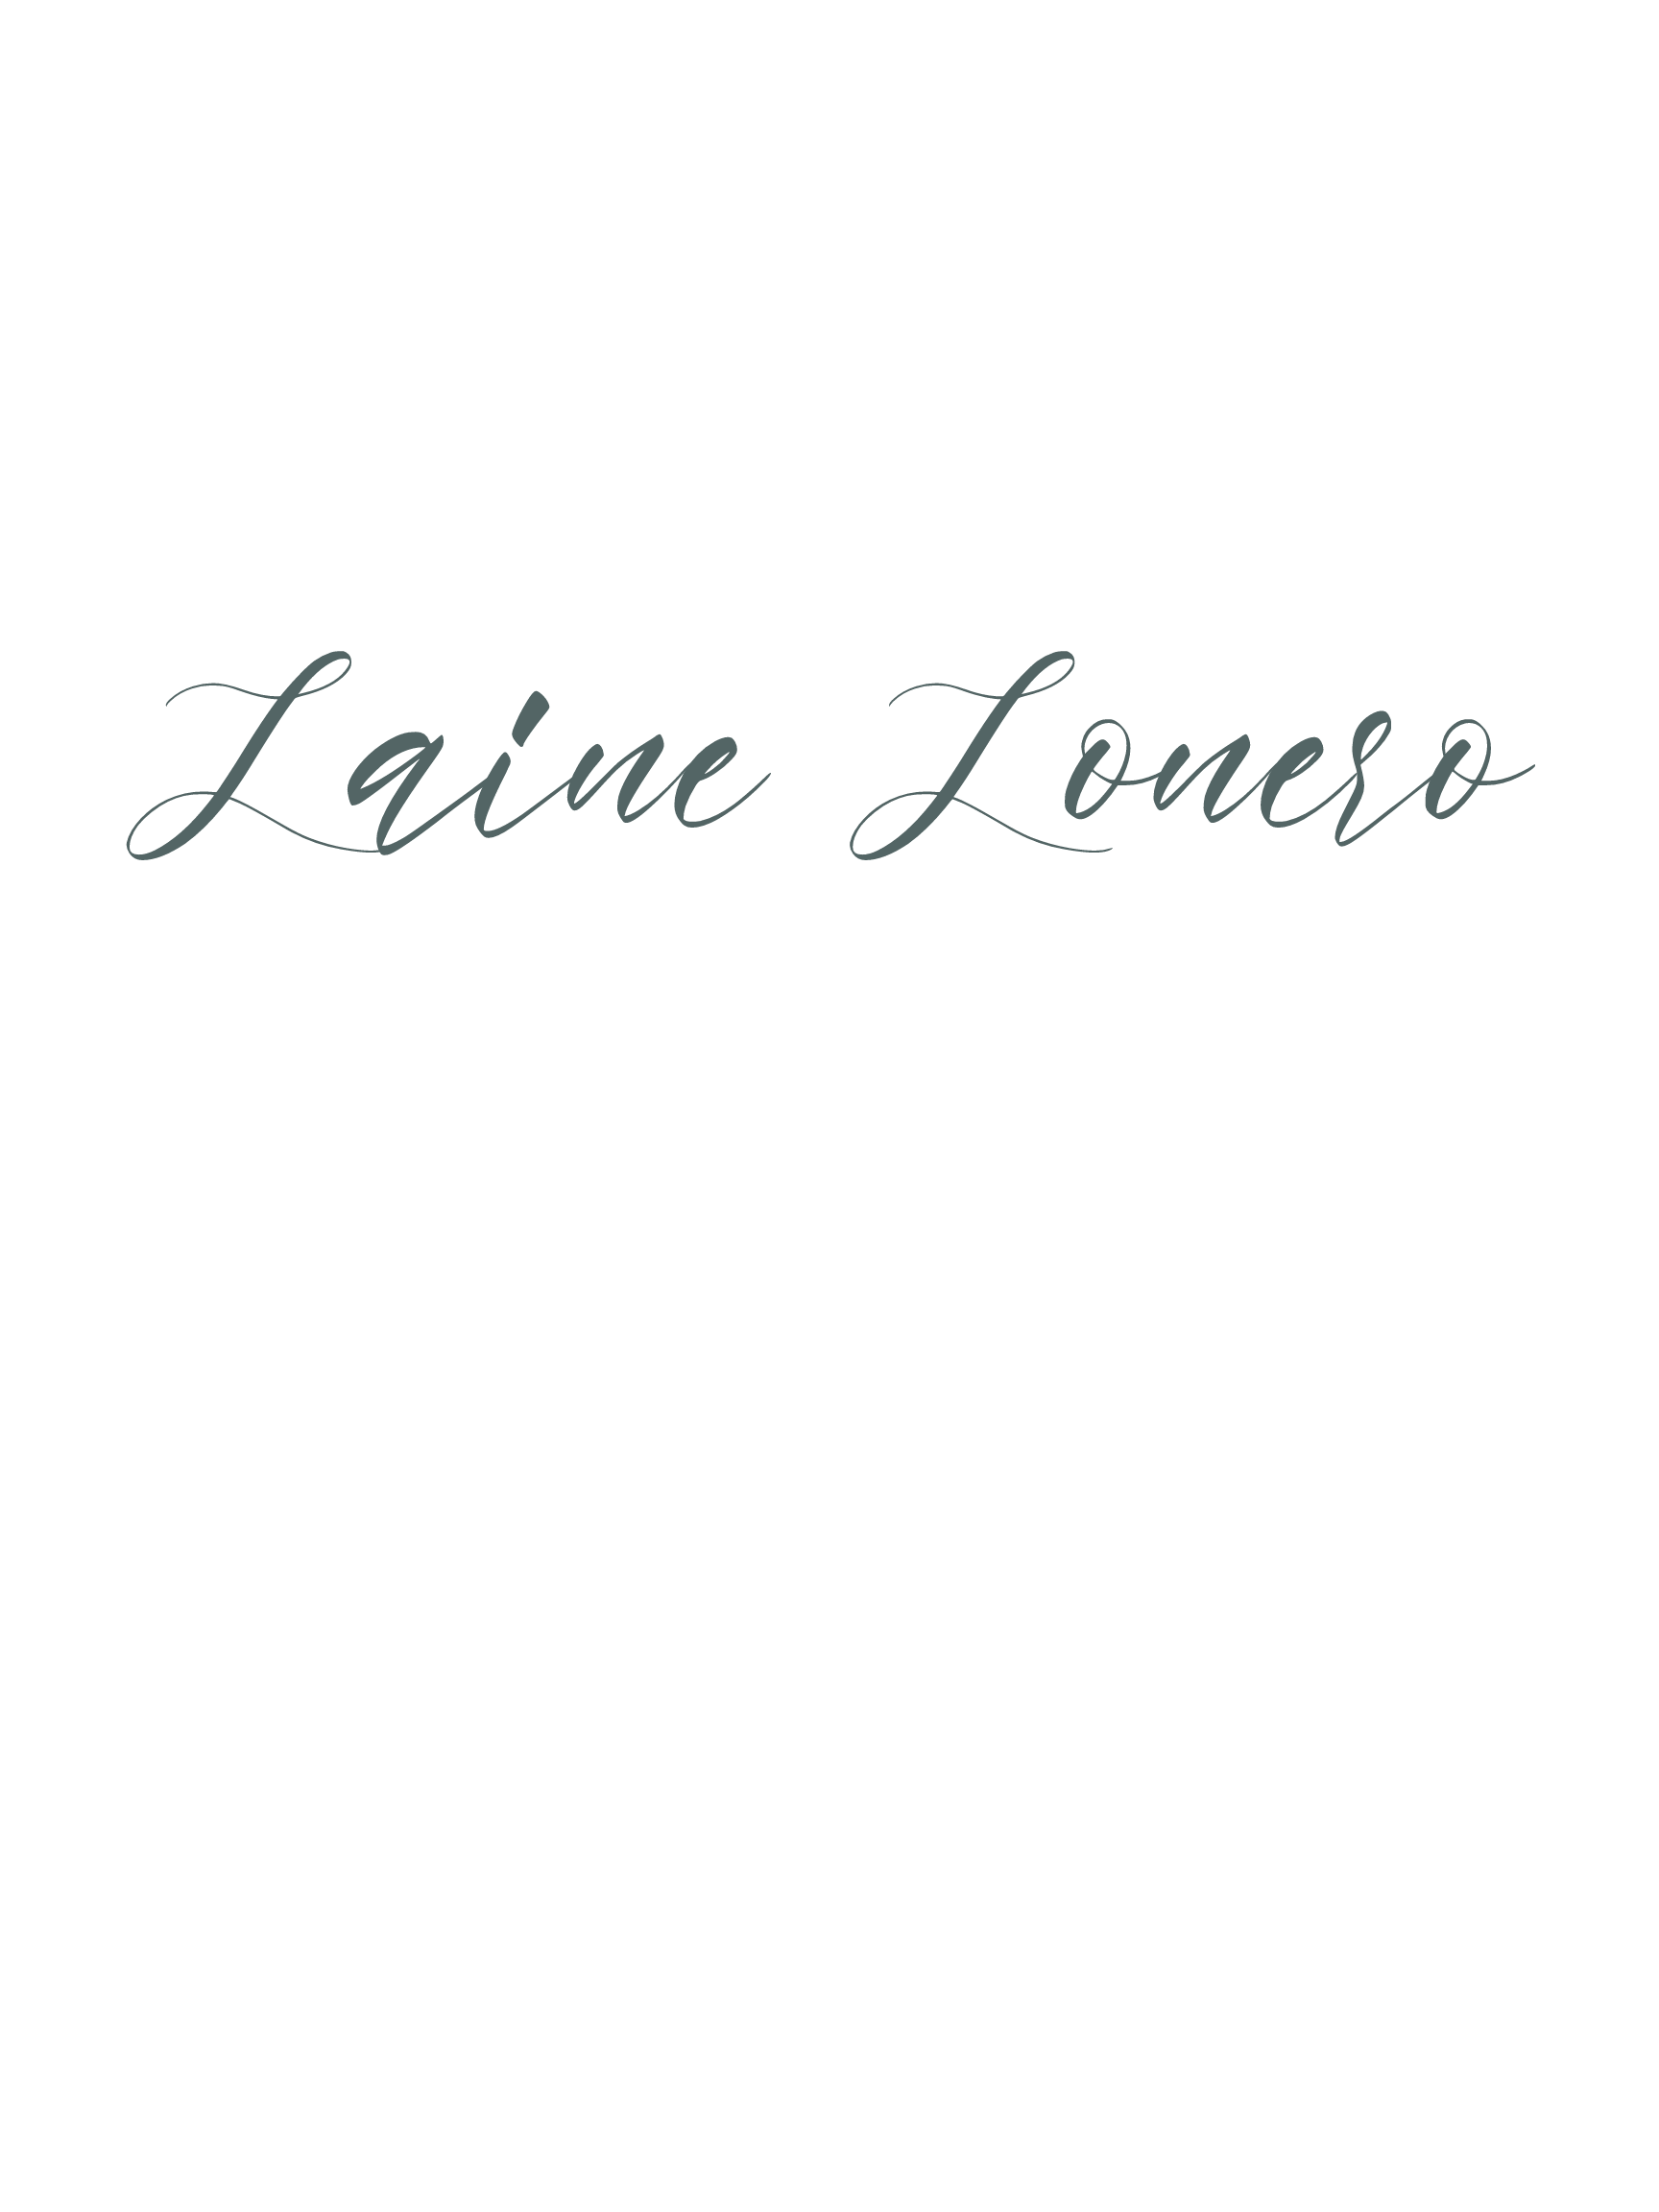 Laine Lonero